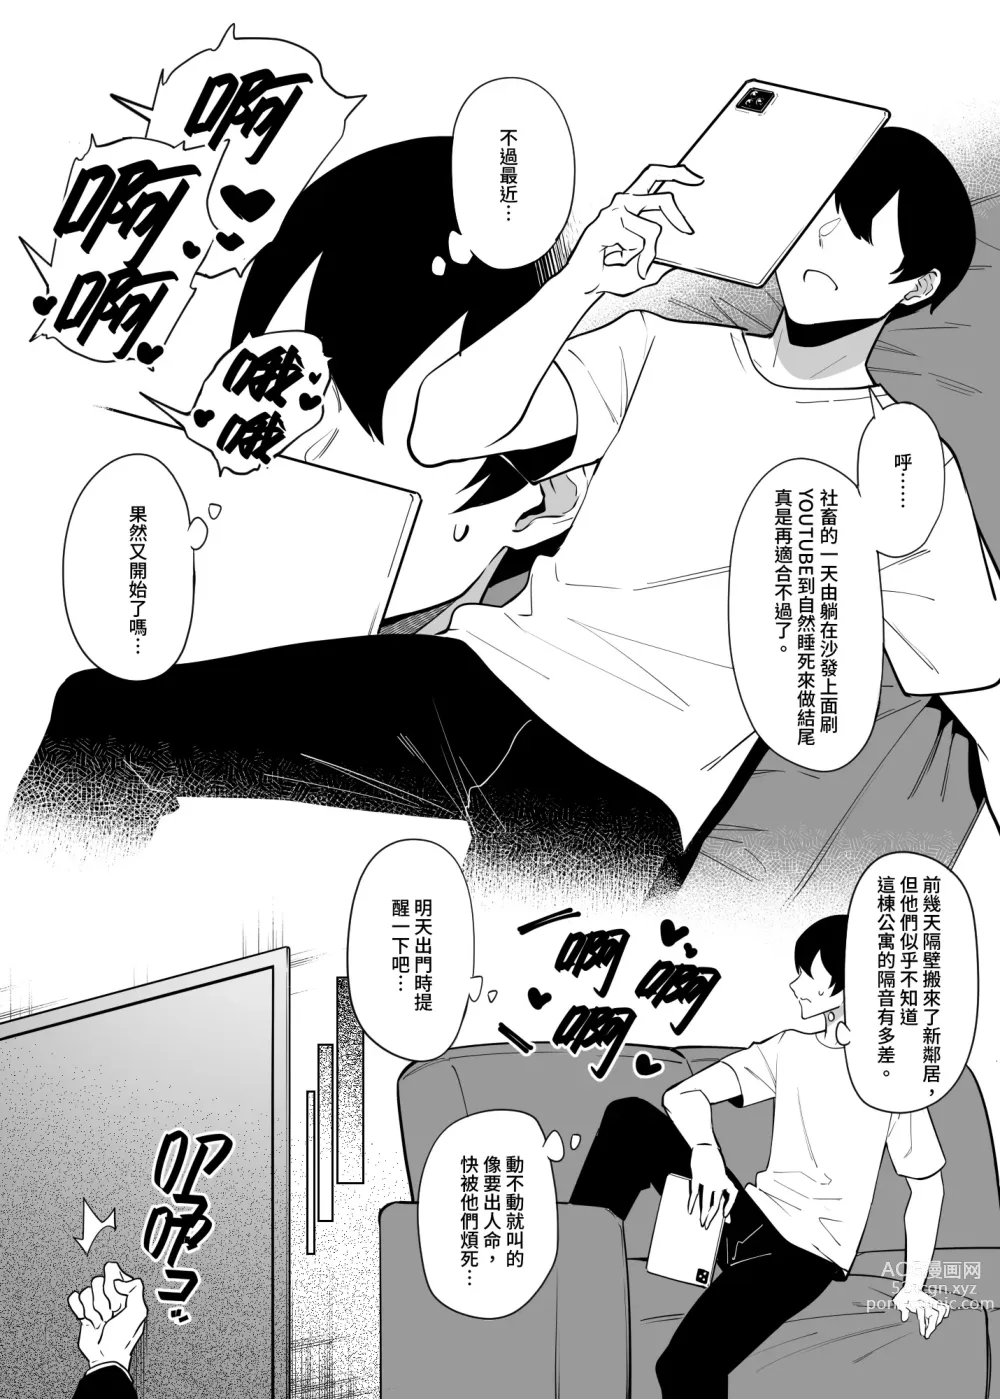 Page 4 of doujinshi comic